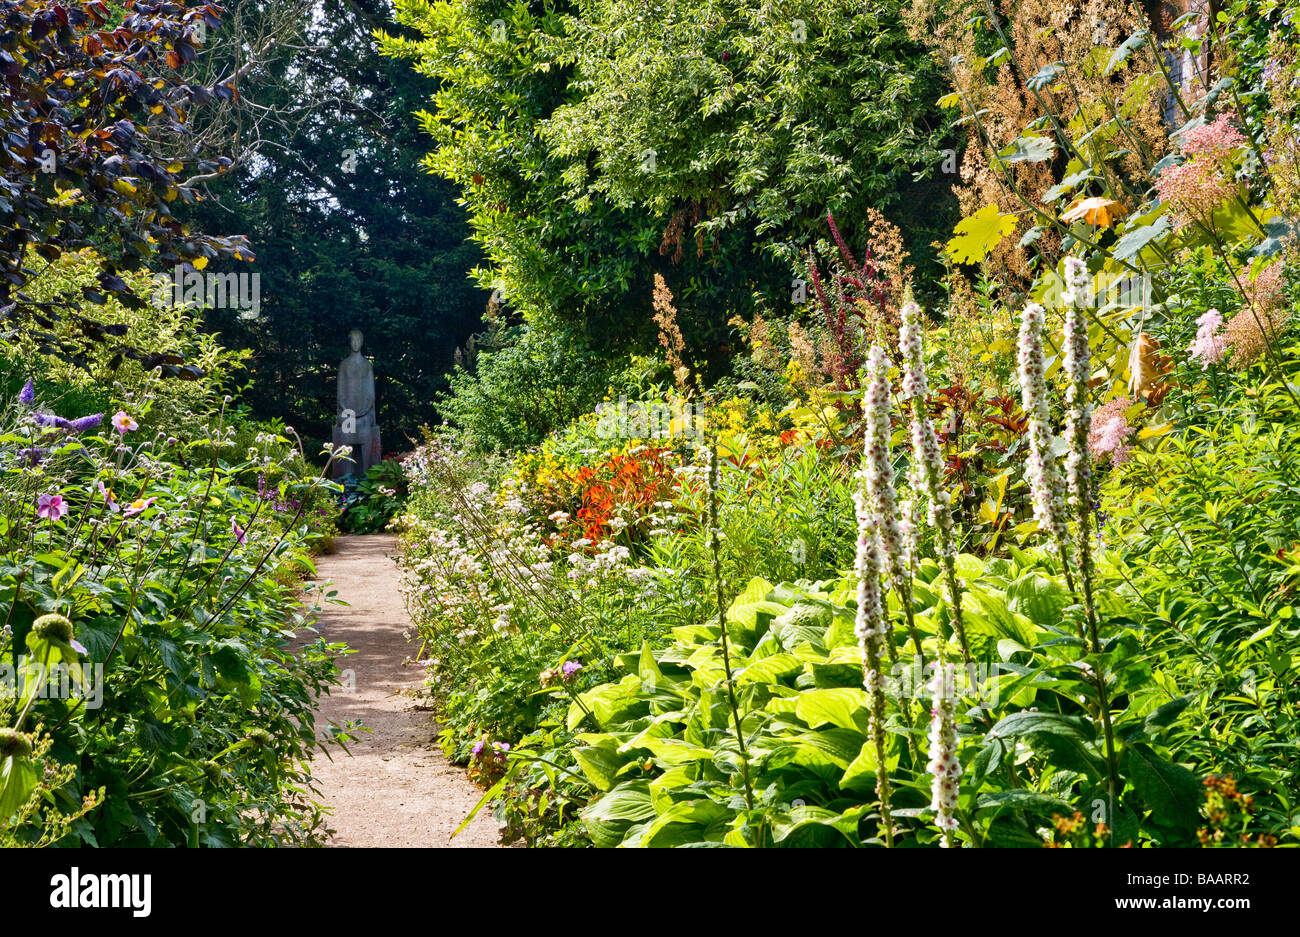 Chemin de jardin entre plante herbacée vivace des frontières pour conduire à une statue à Wheatley Oxfordshire Oxon Waterperry Gardens England UK Banque D'Images